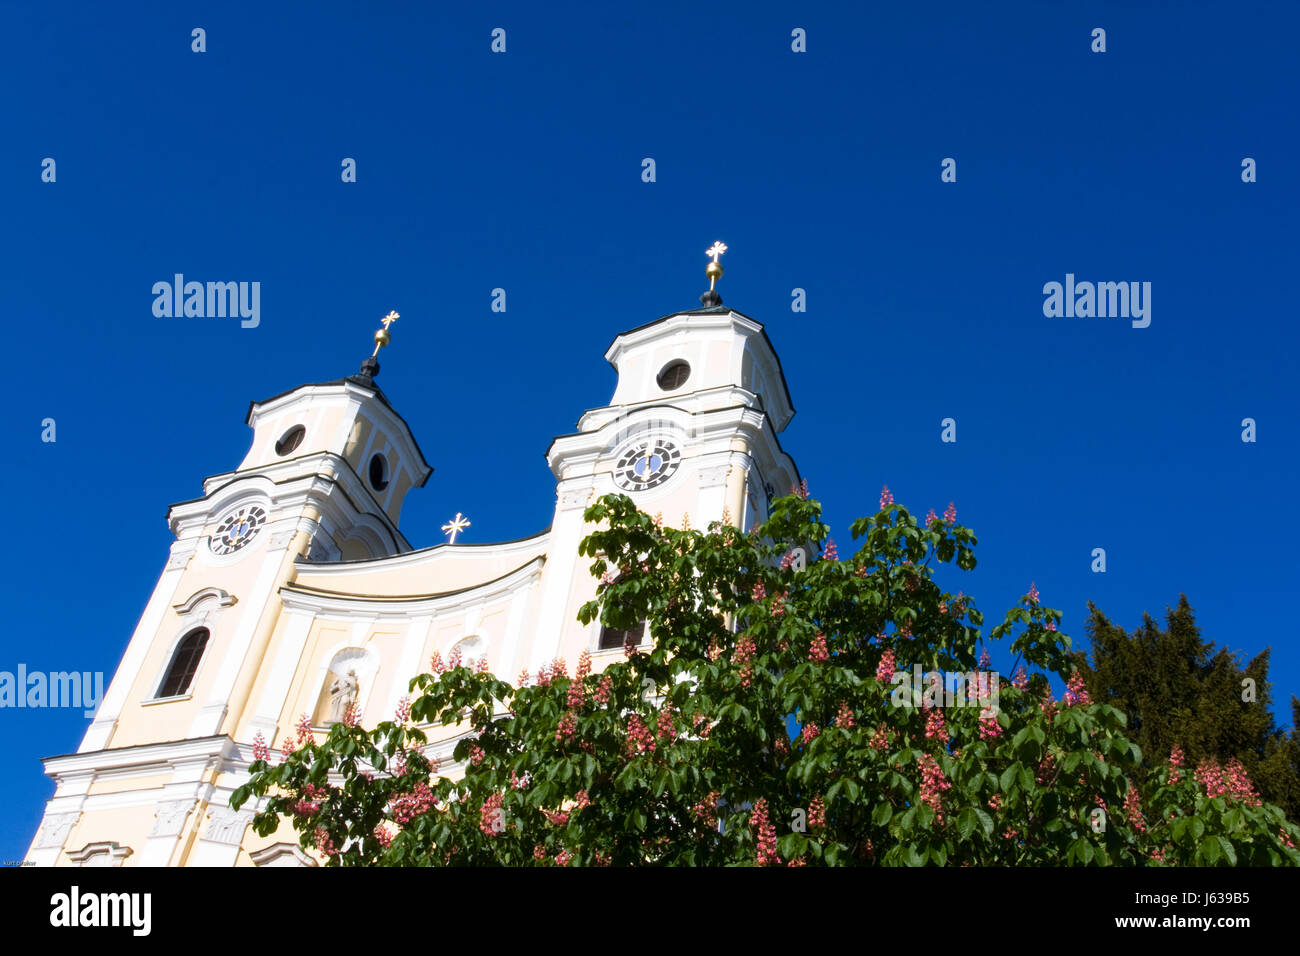 Worm occhio blu storica chiesa di stile di architettura costruttiva Foto Stock